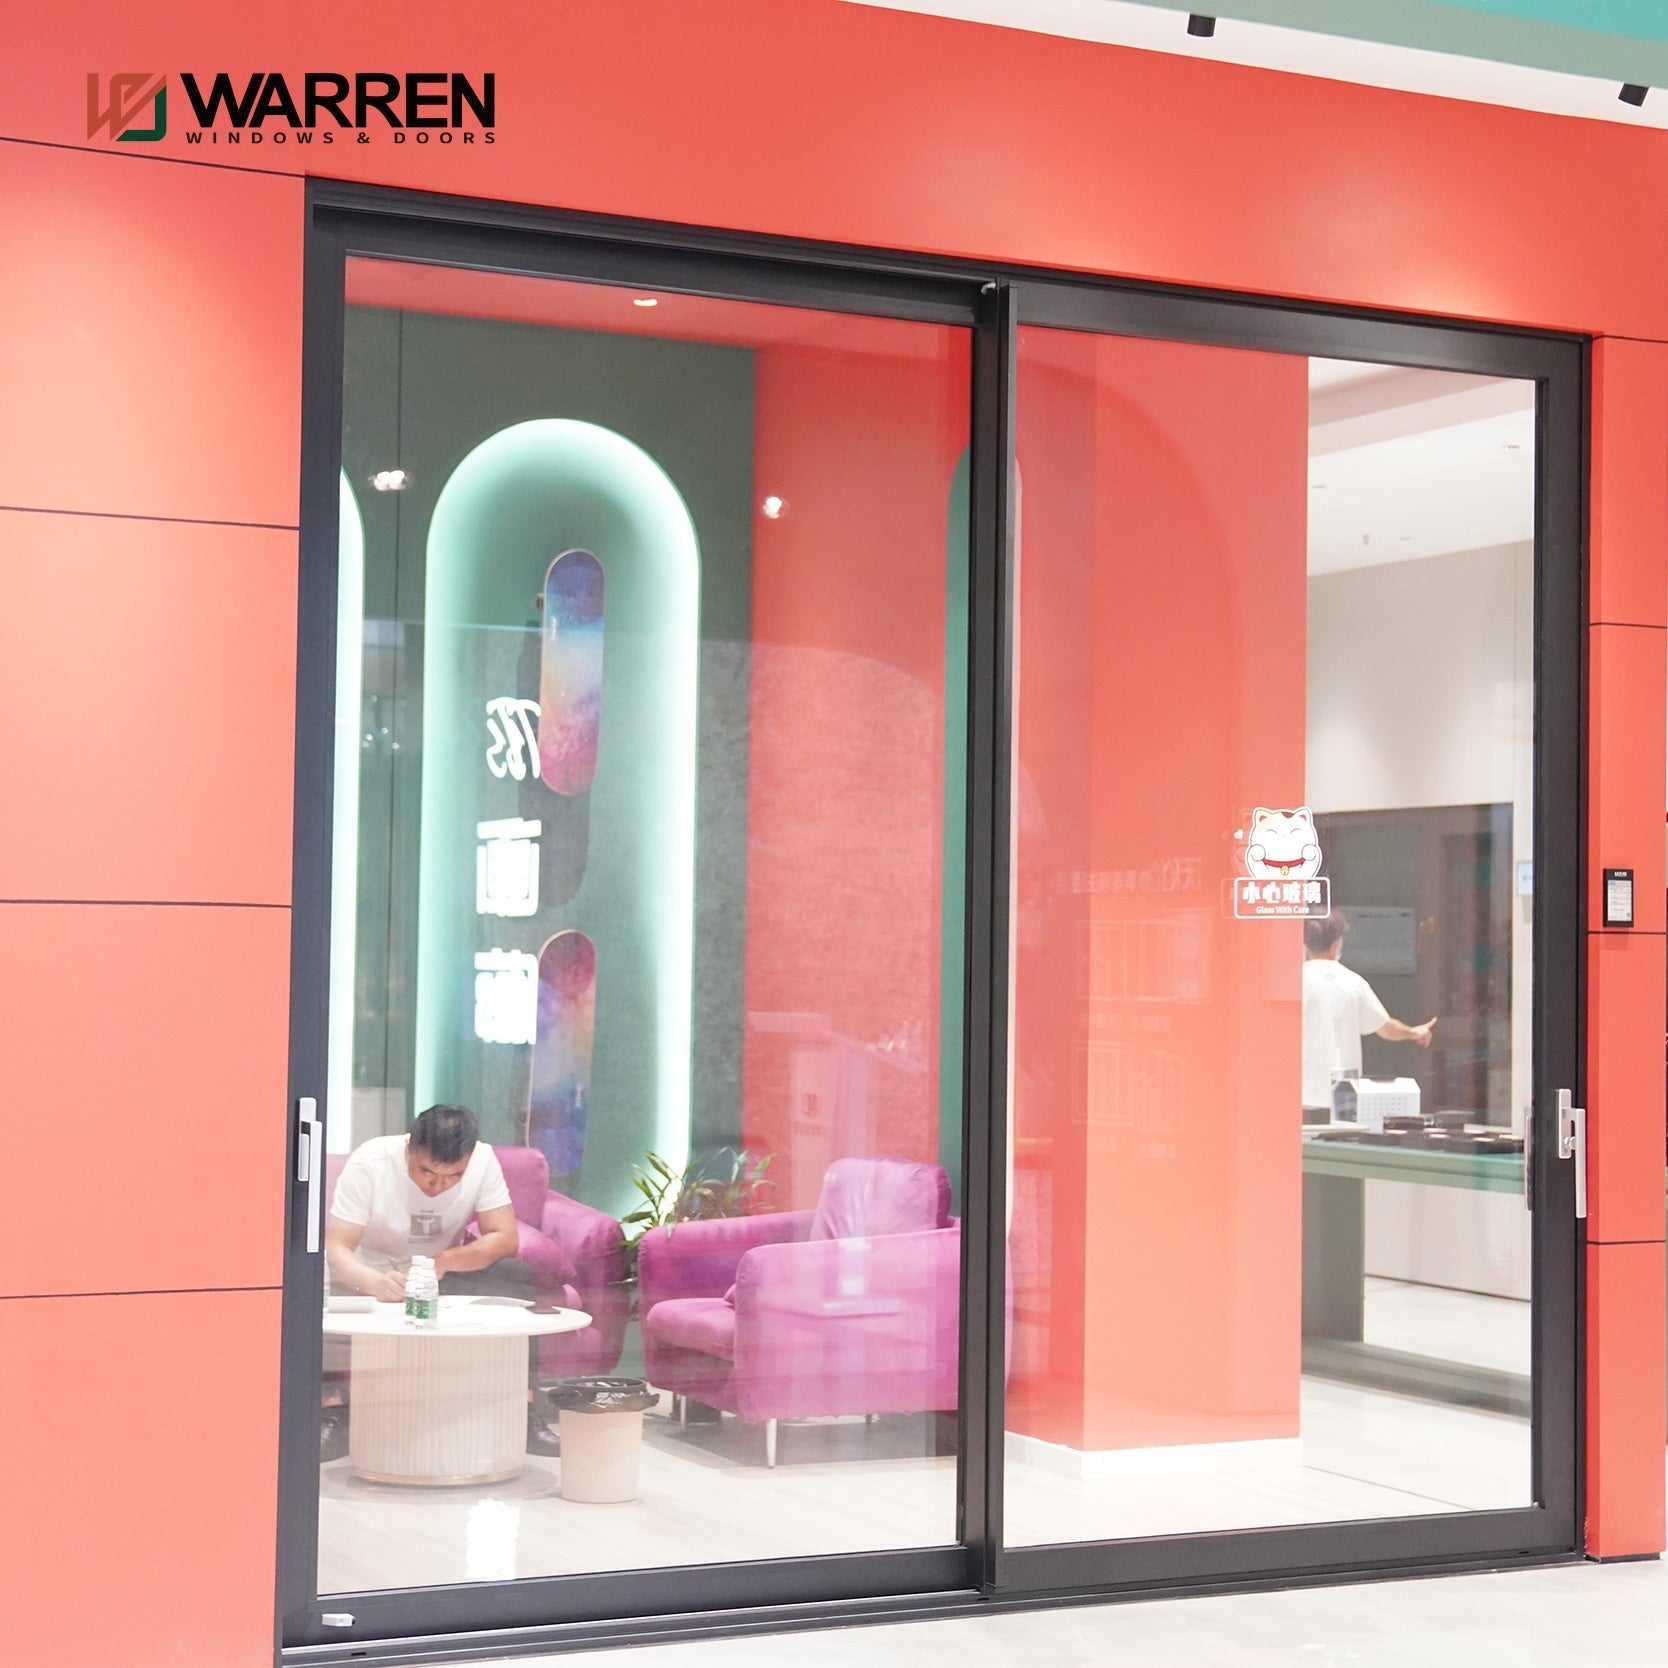 Warren 96 Sliding Patio Door With Built In Blinds Sliding Door Wardrobe Designs Cost